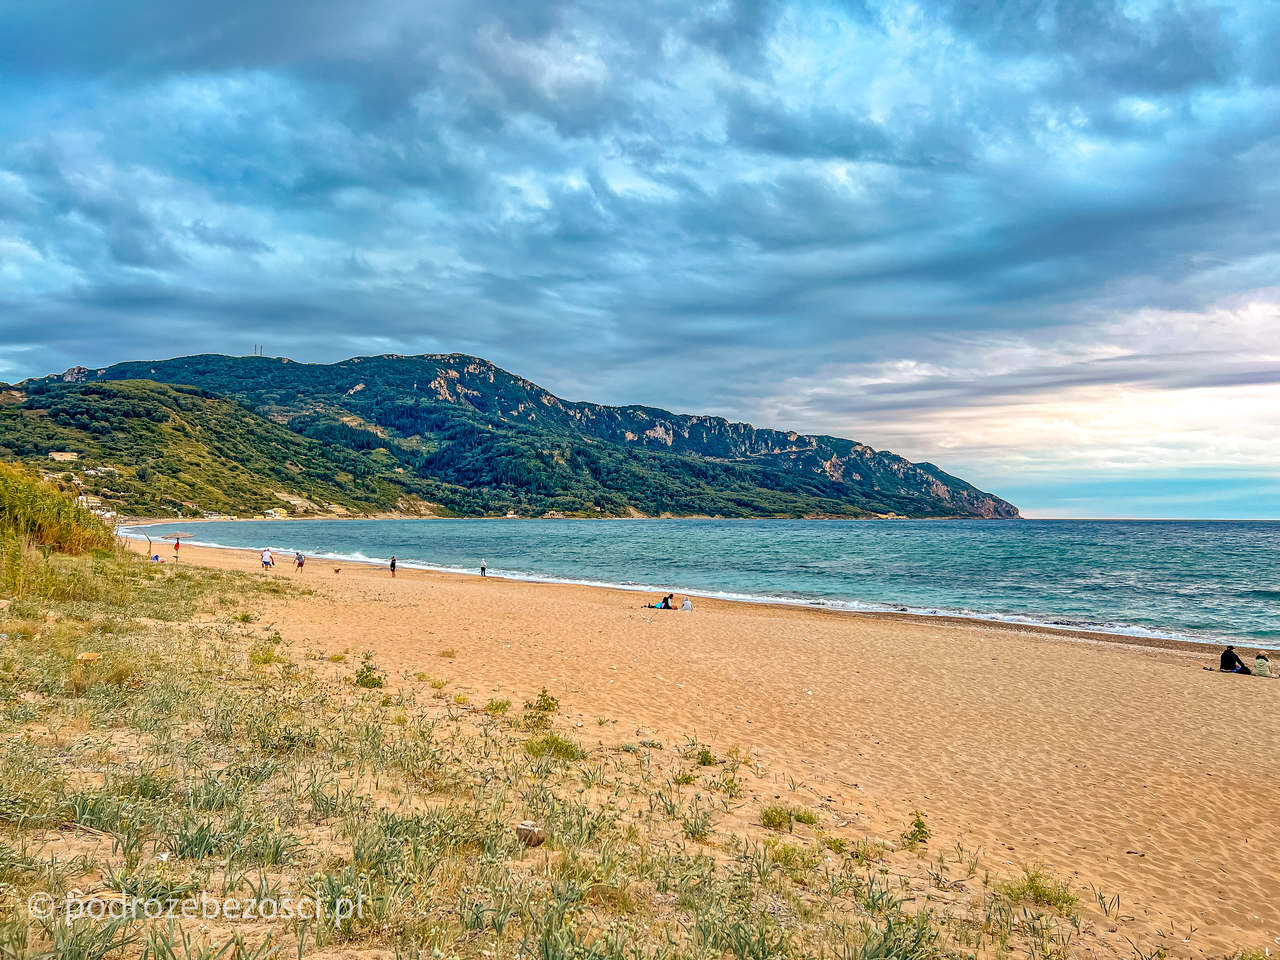 argios georgios najpiekniejsze-plaze-na-korfu-grecja-plaza-piaszczysta-gdzie-warto-plazowac-jak-wygladaja-plaze-na-korfu-mapa-top-10-beaches-corfu-greece